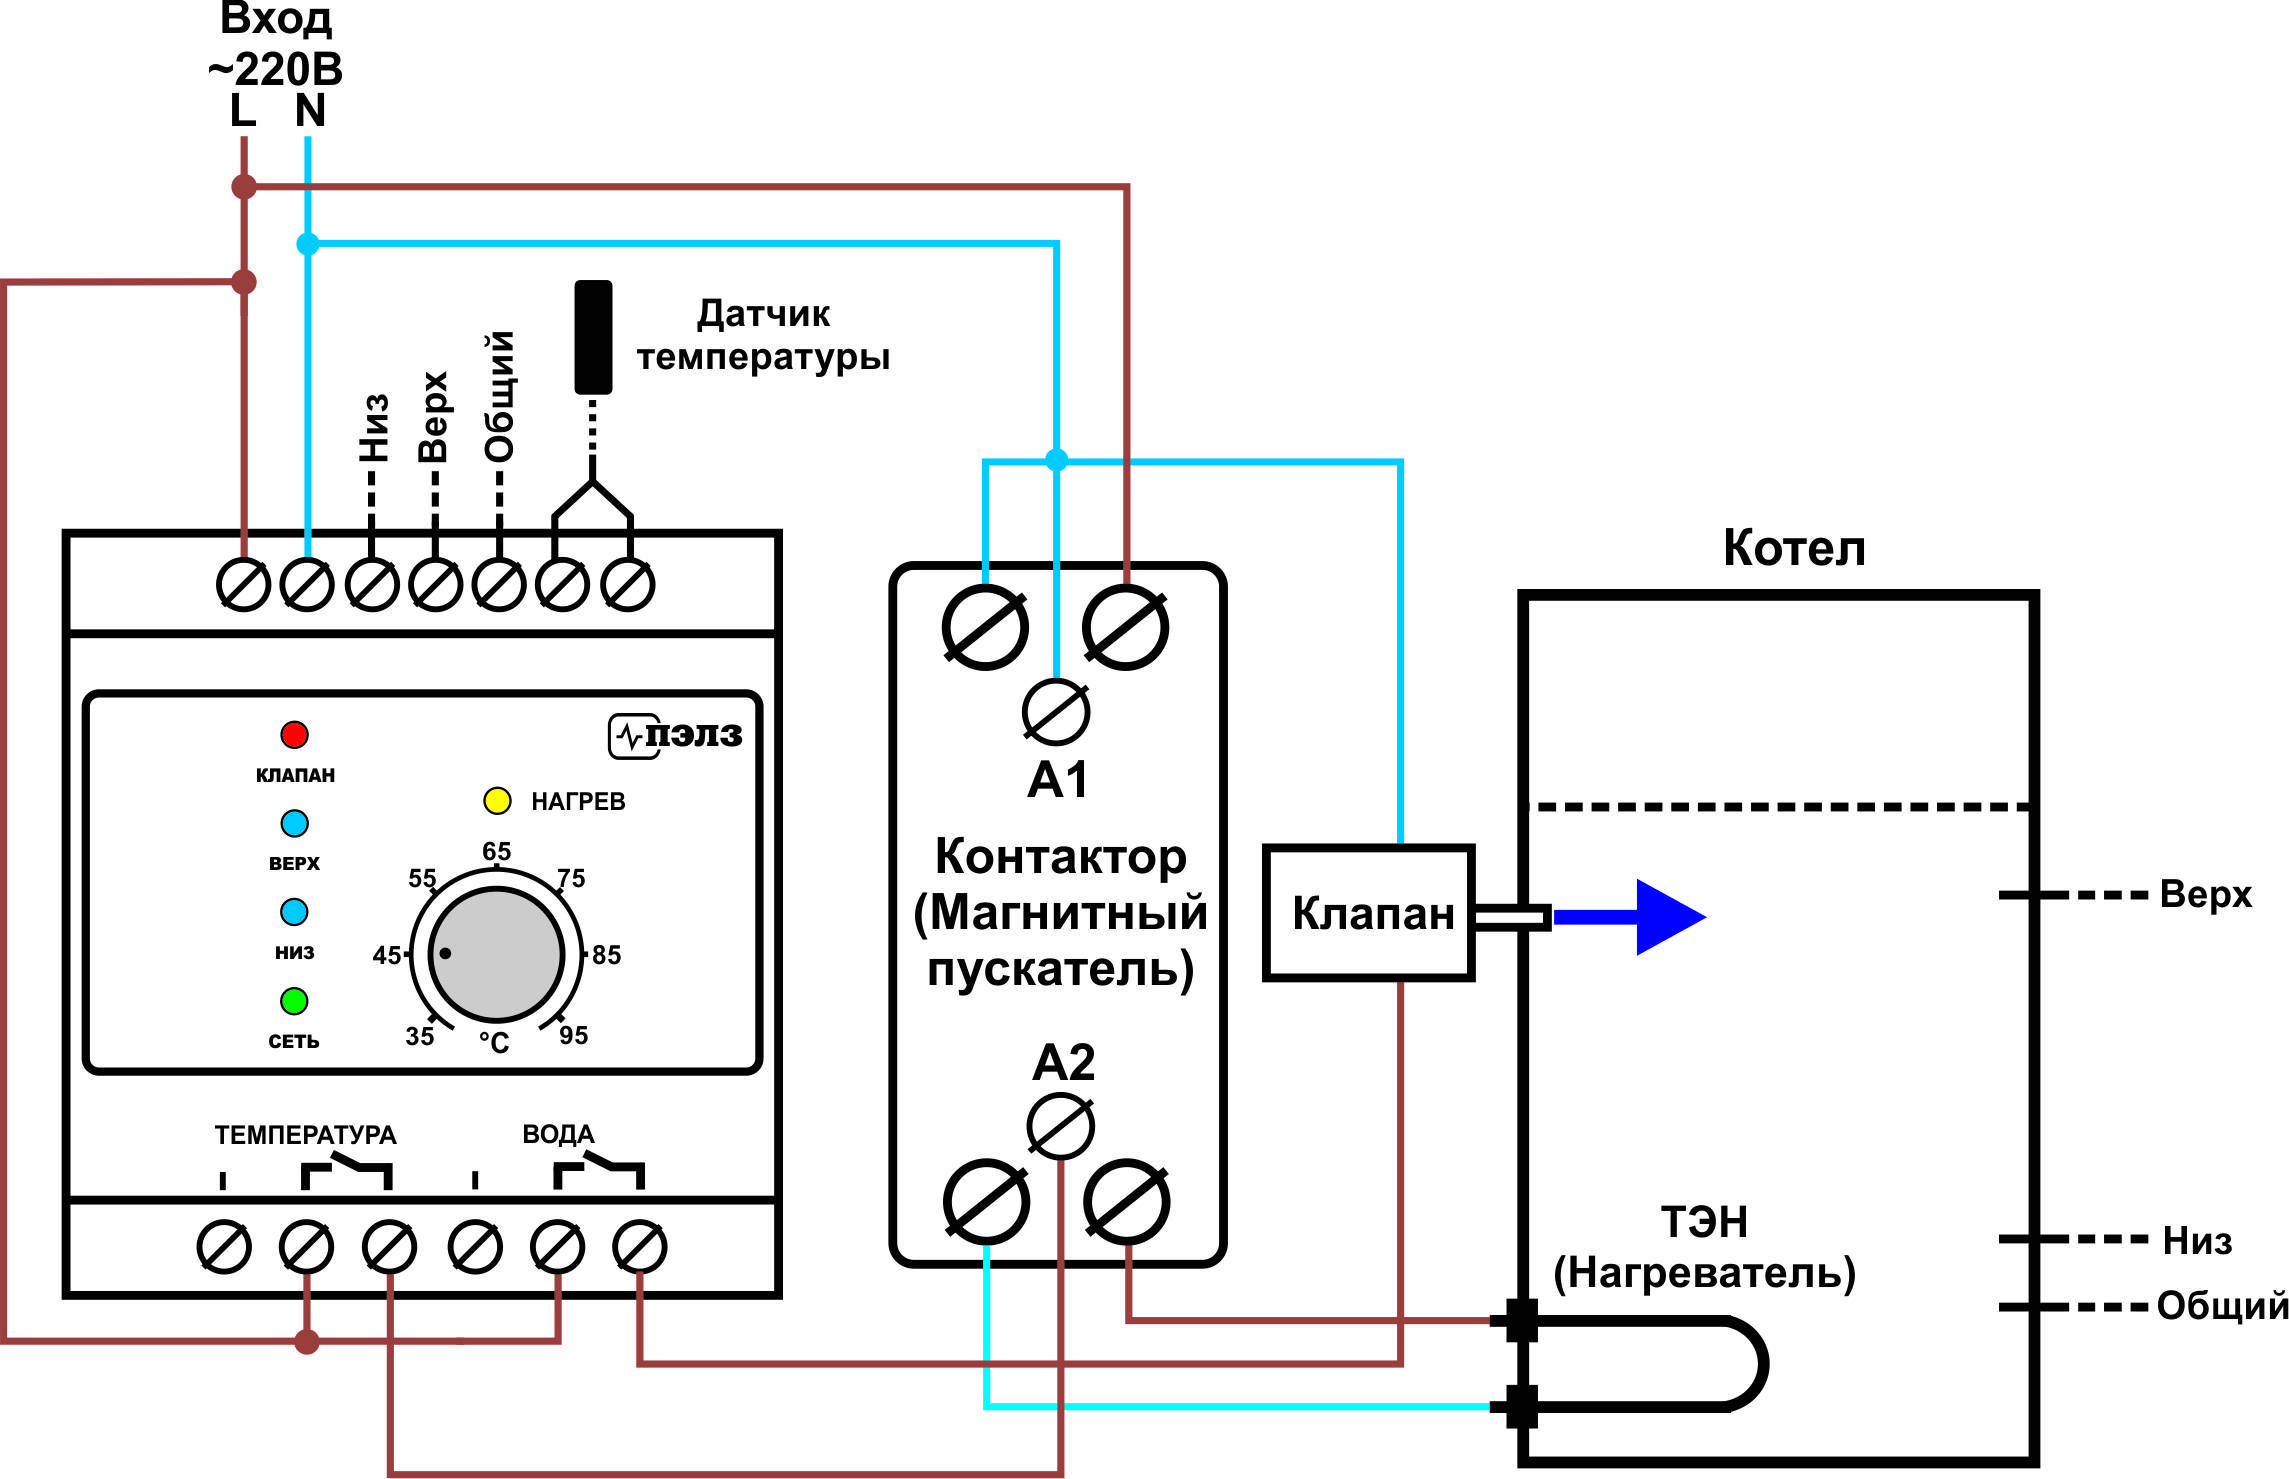 Термостаты для отопления - принцип работы и разновидности